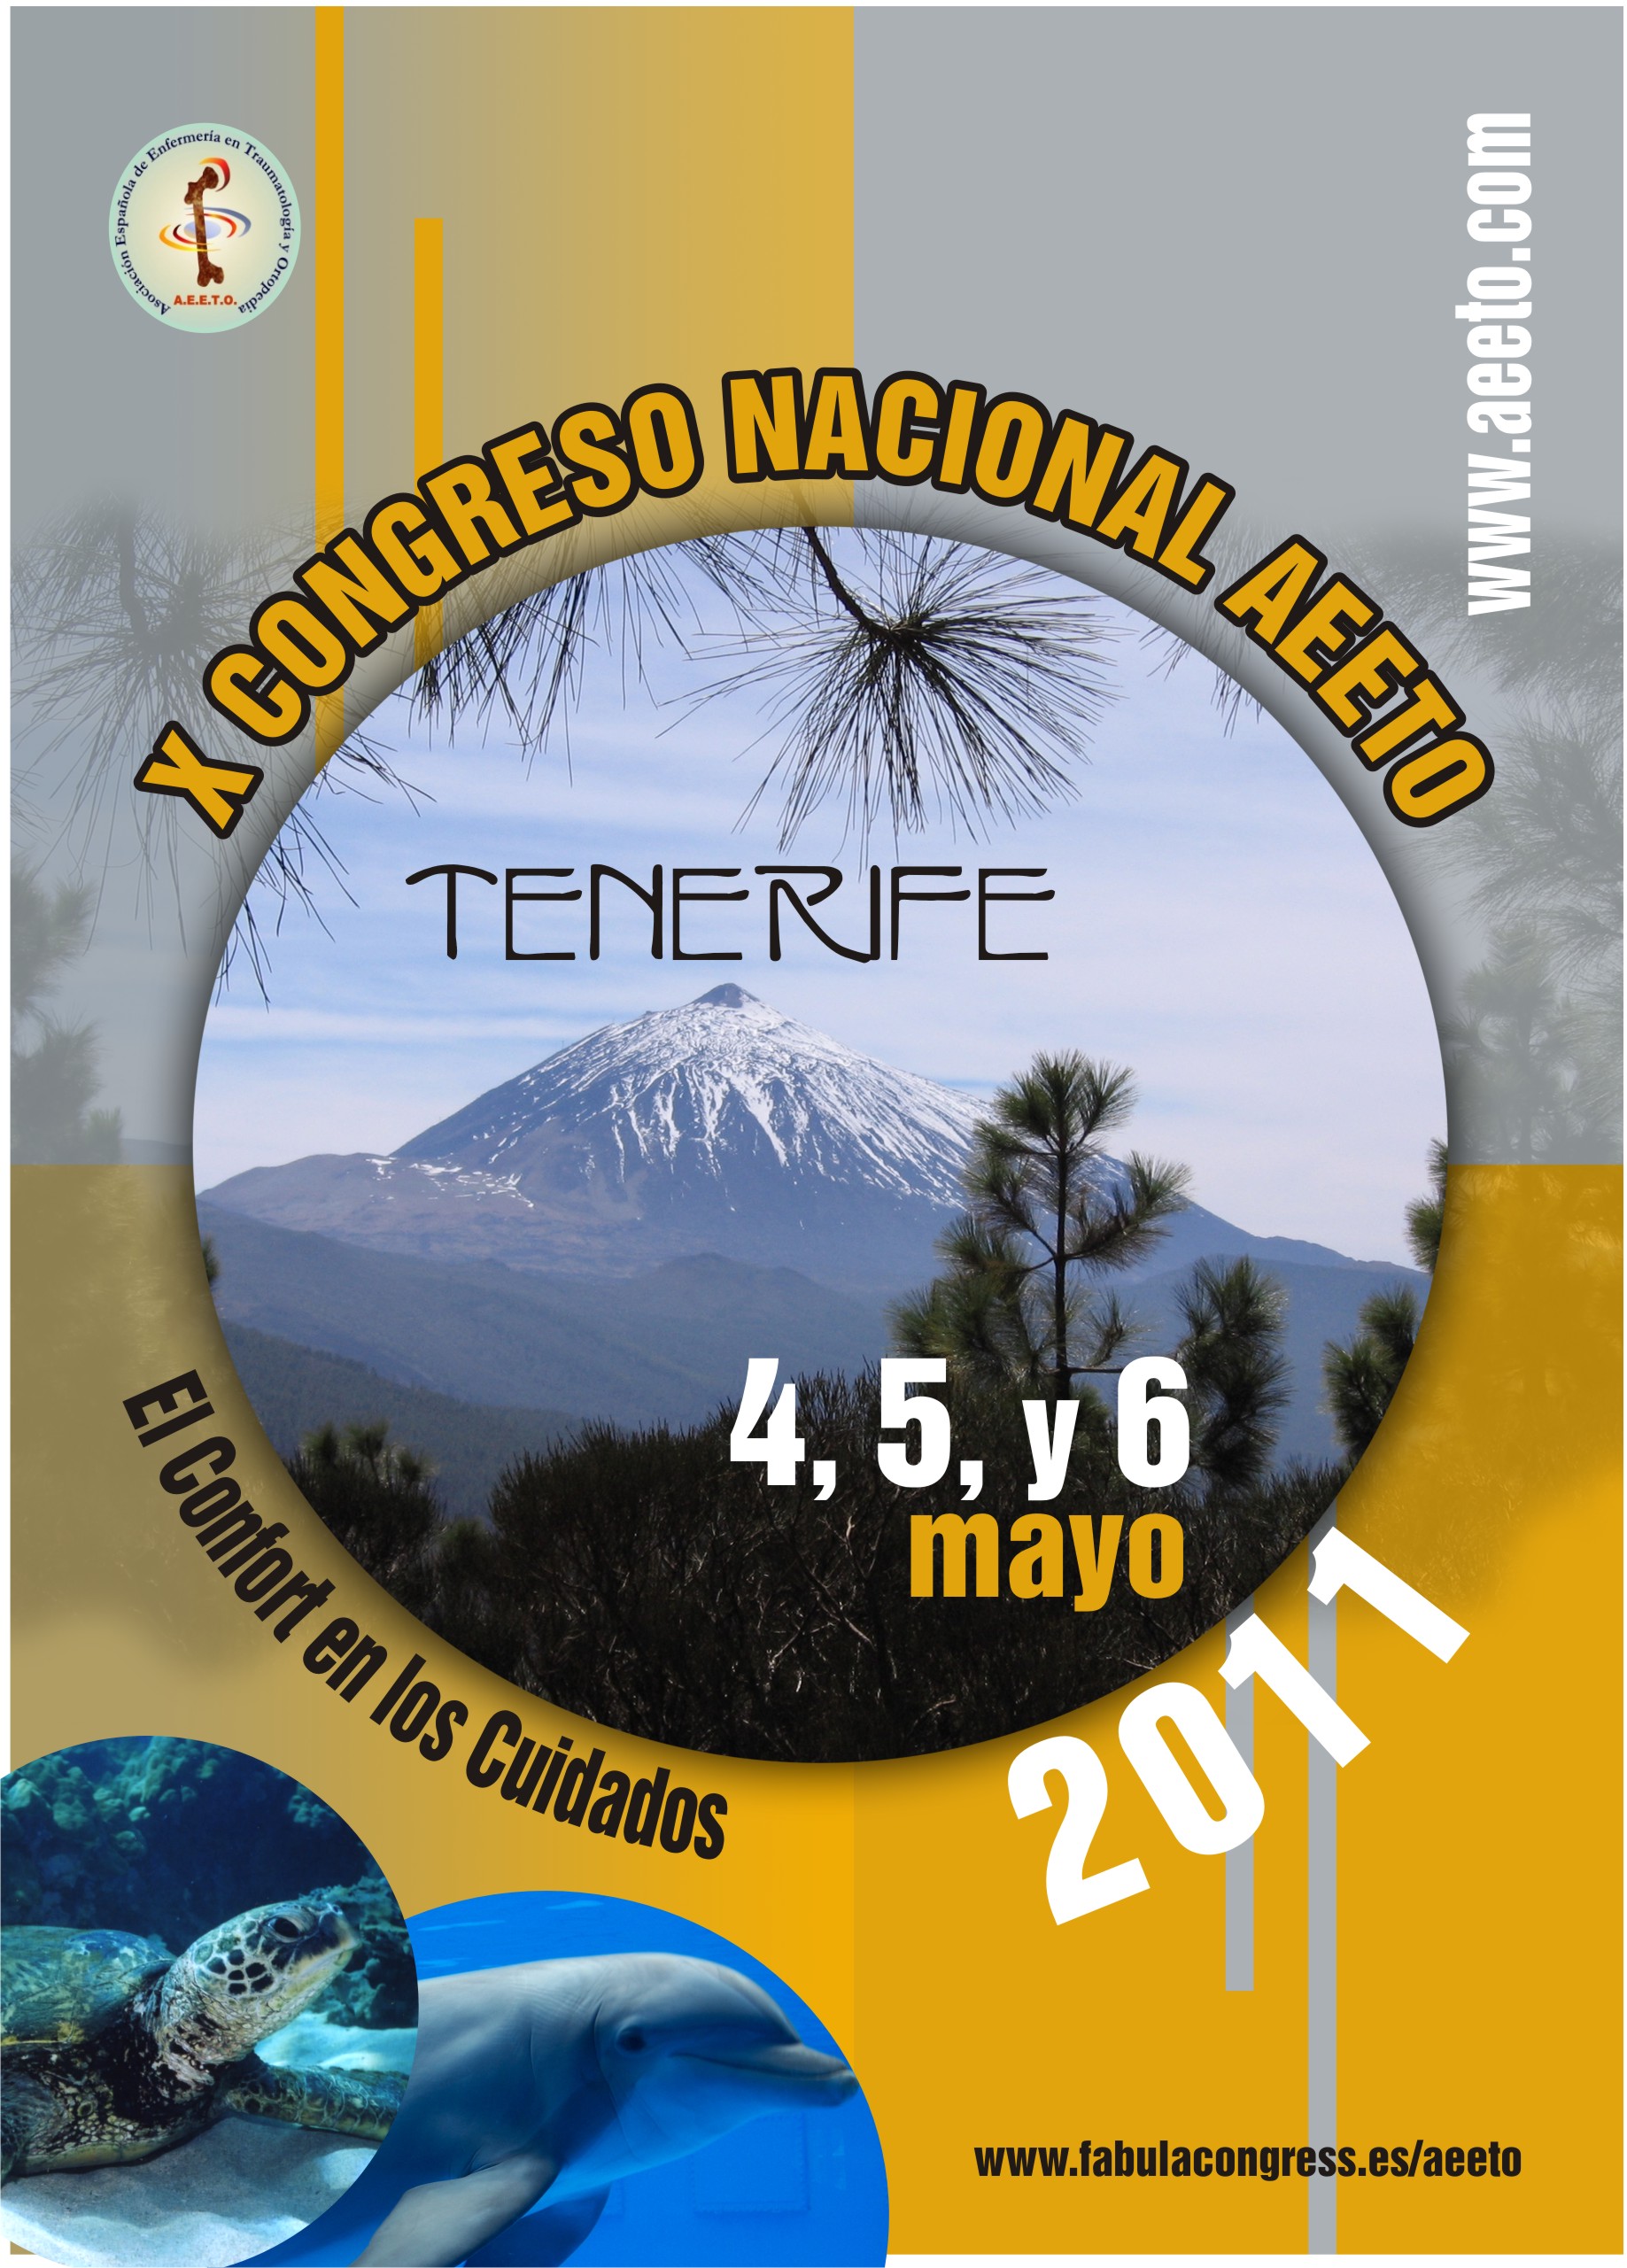 2-Tenerife202011